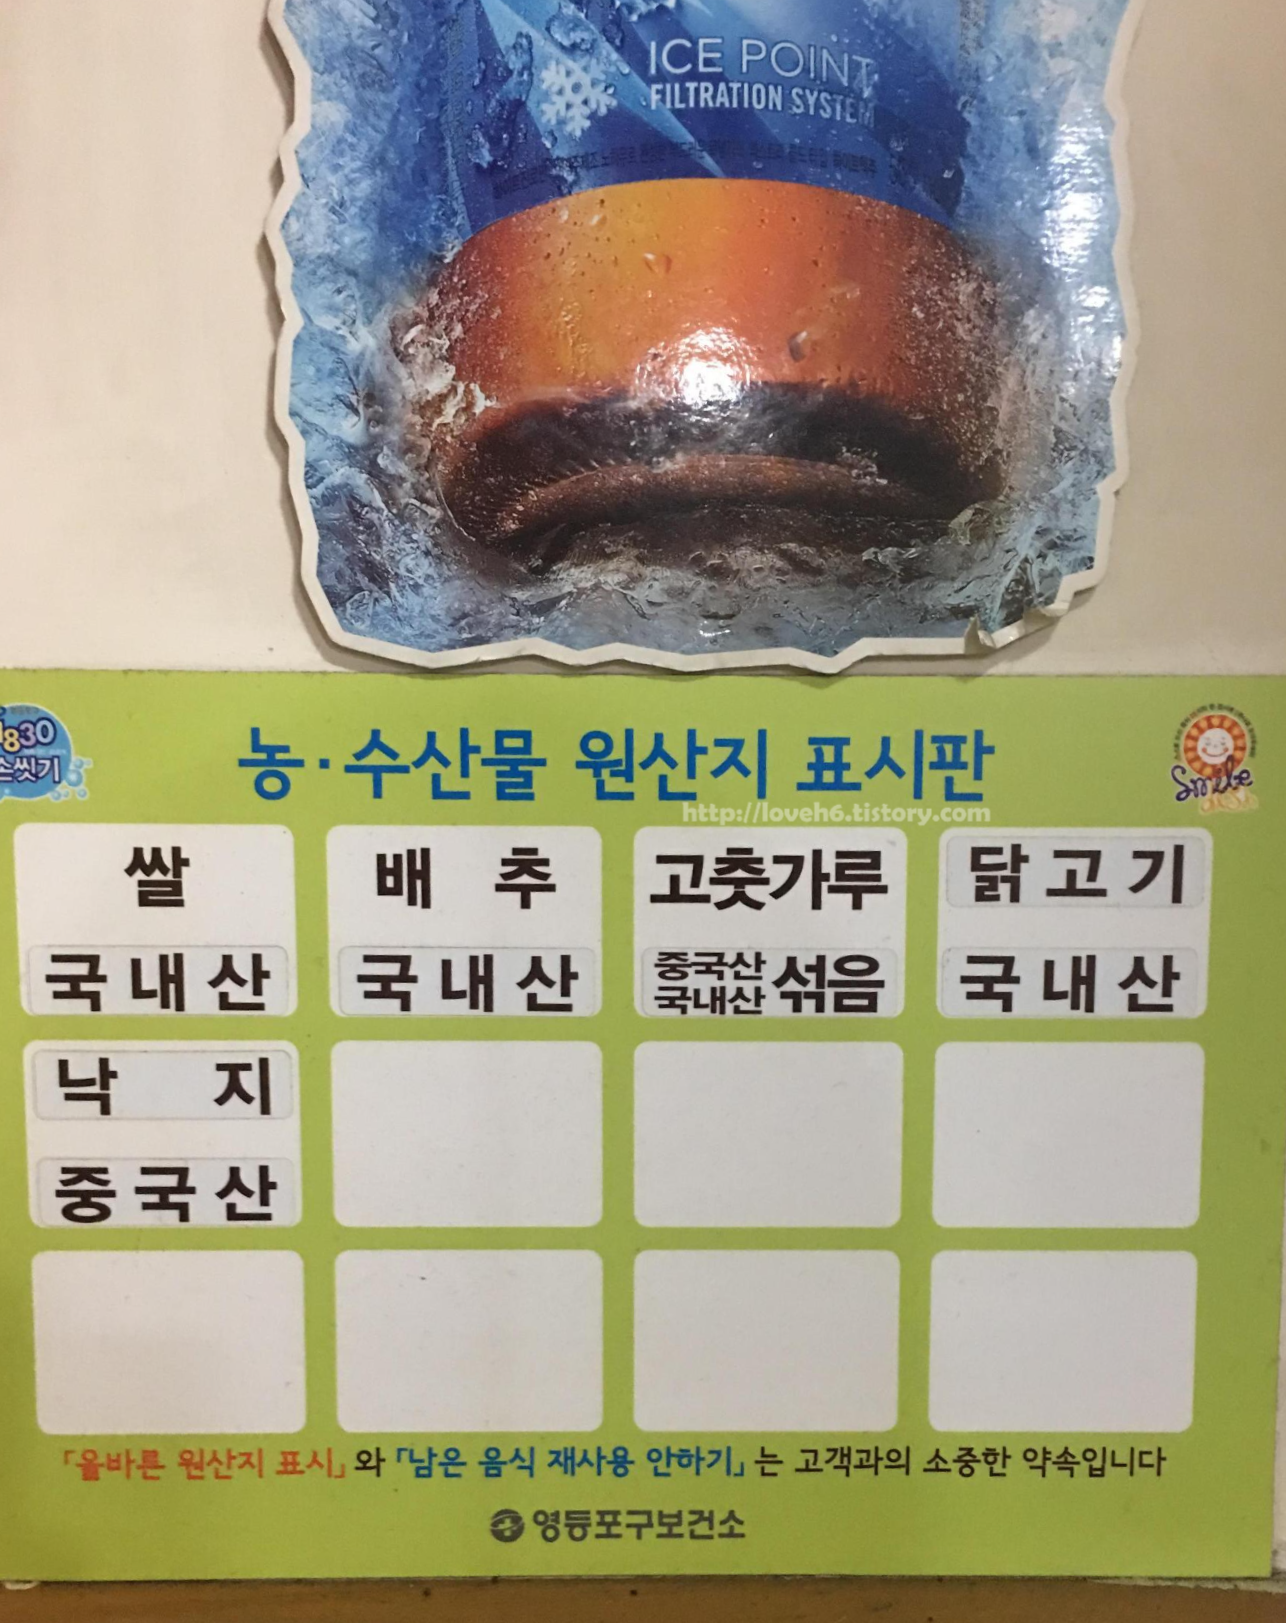 
정솔 닭한마리 영등포 본점/Jeongsol Chicken Hanmari,Yeongdeungpo Main Branch/원산지 표시판입니다 쌀.배추.닭고기.=국내산/고춧가루.중국산+국내산 섞음/낙지.중국산/참고하세요
